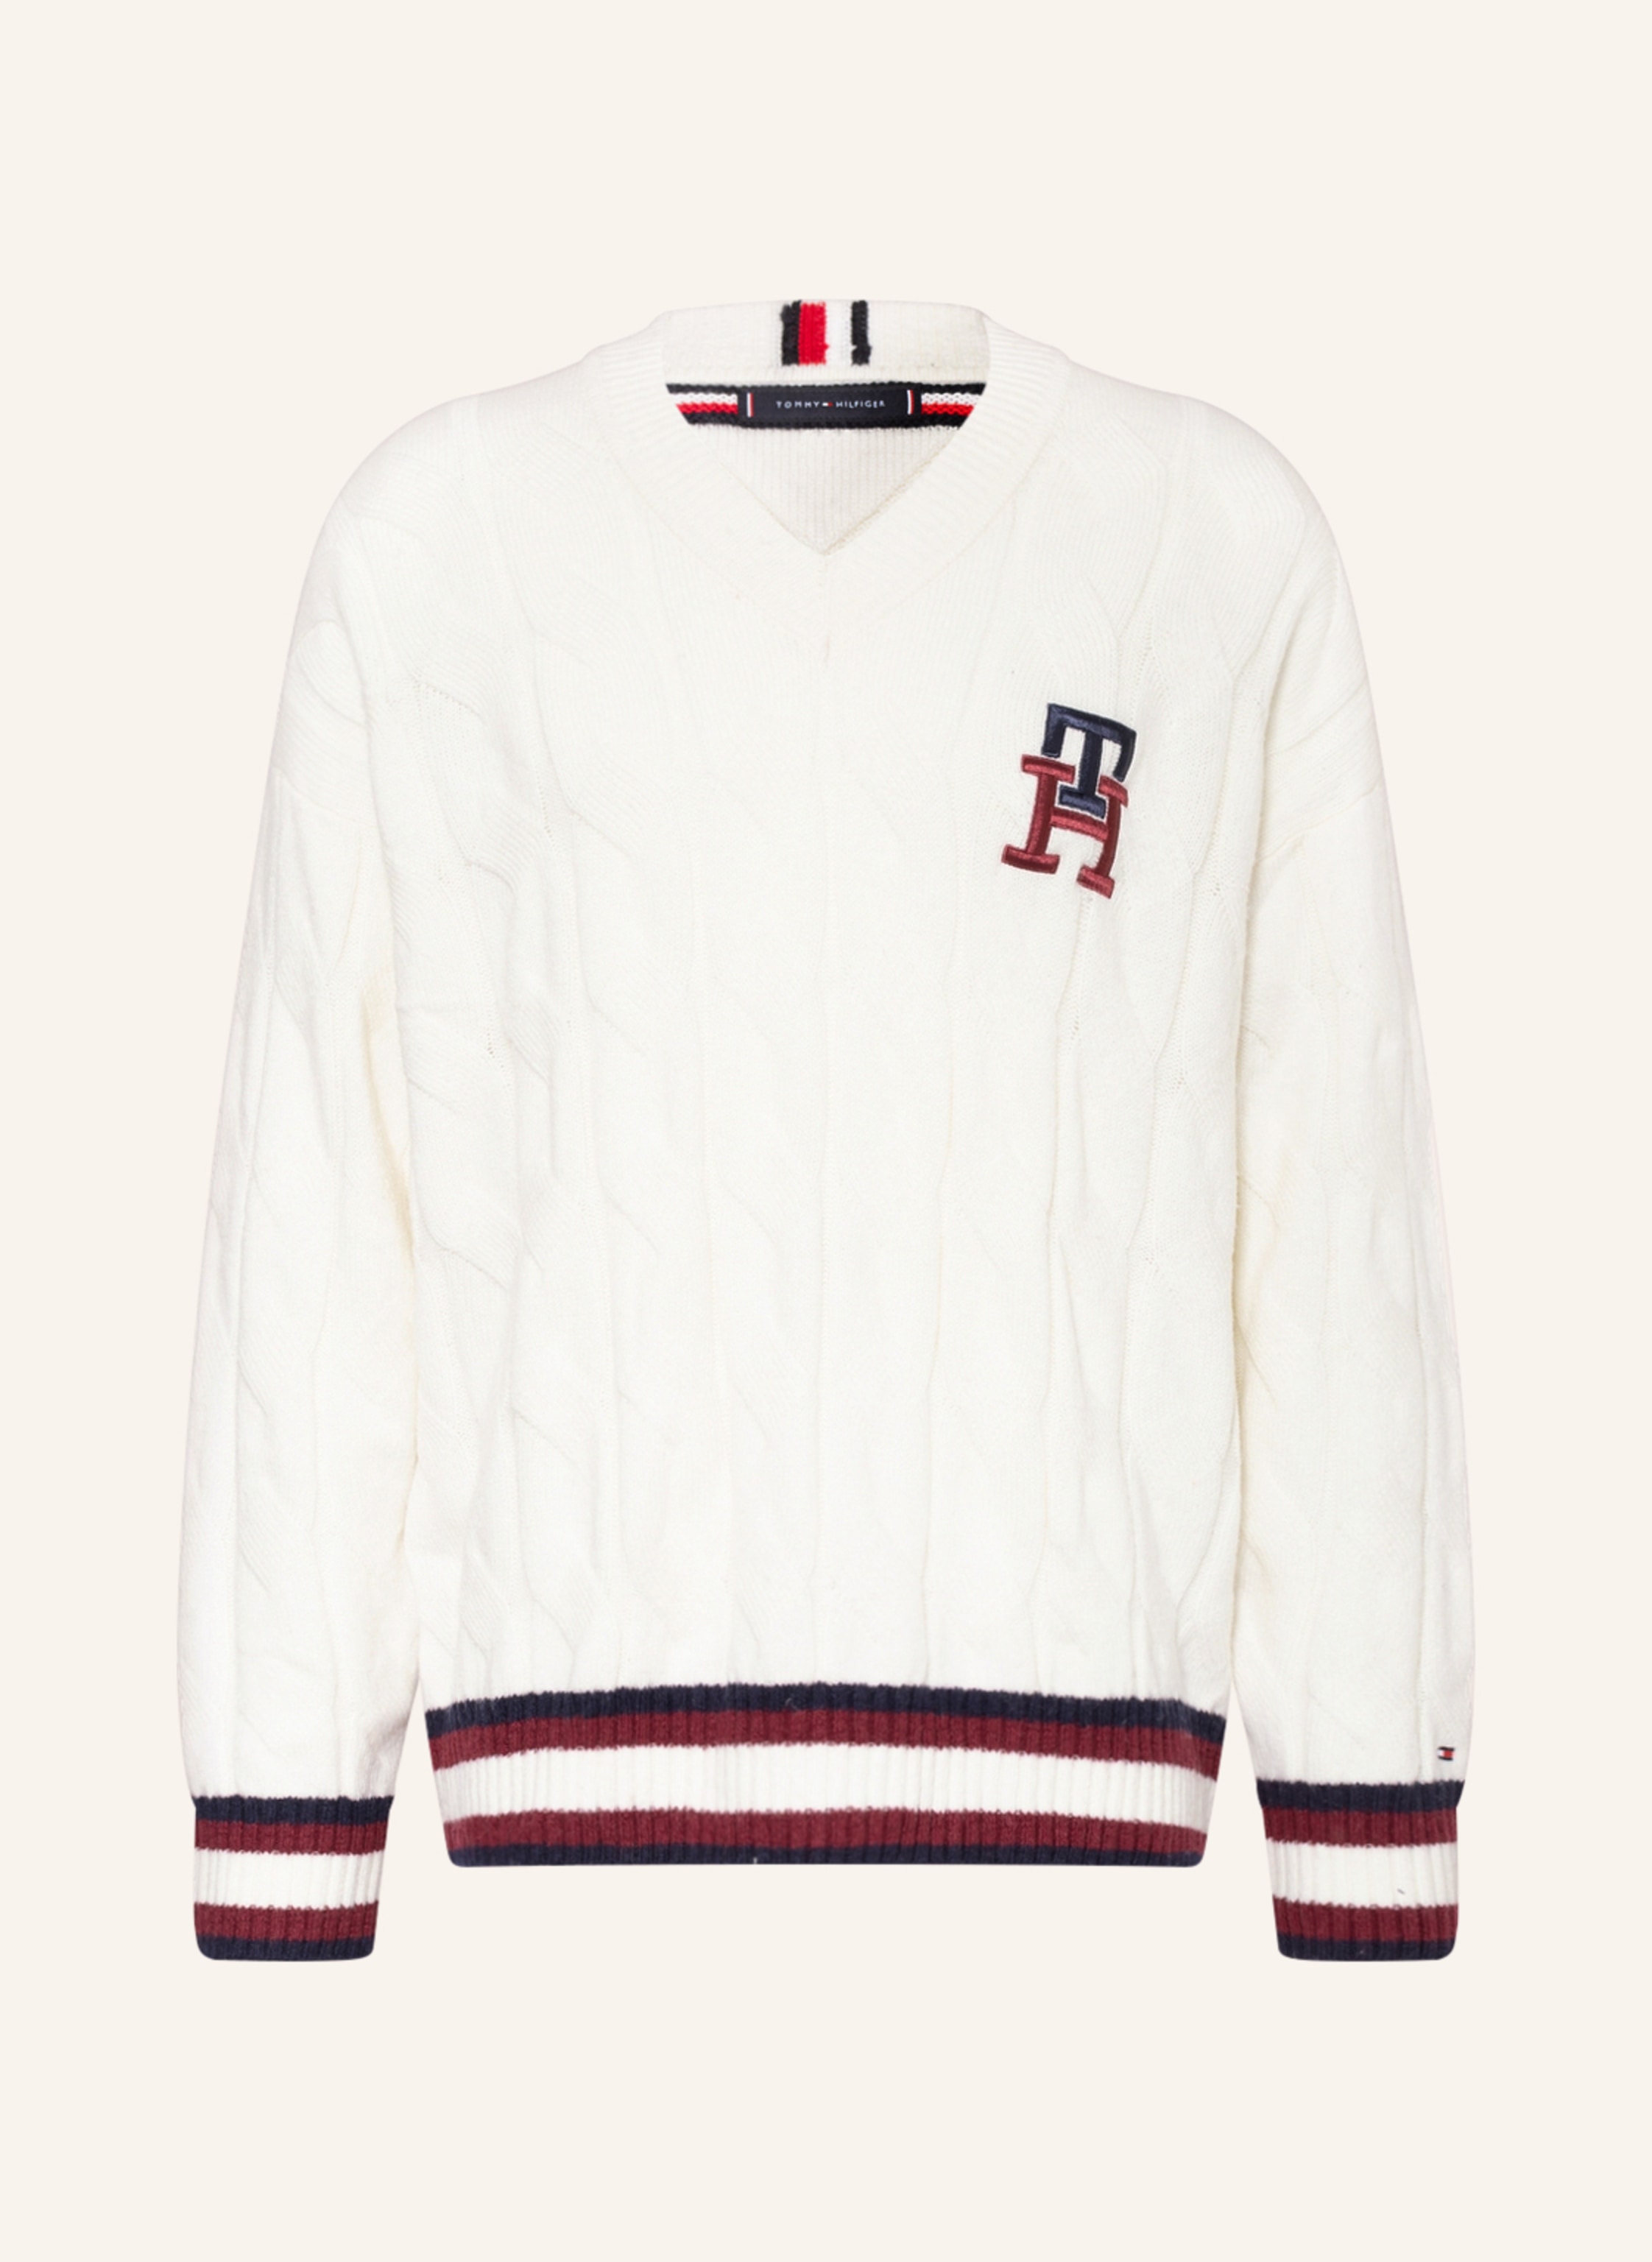 TOMMY HILFIGER Sweater in white/ dark blue/ red